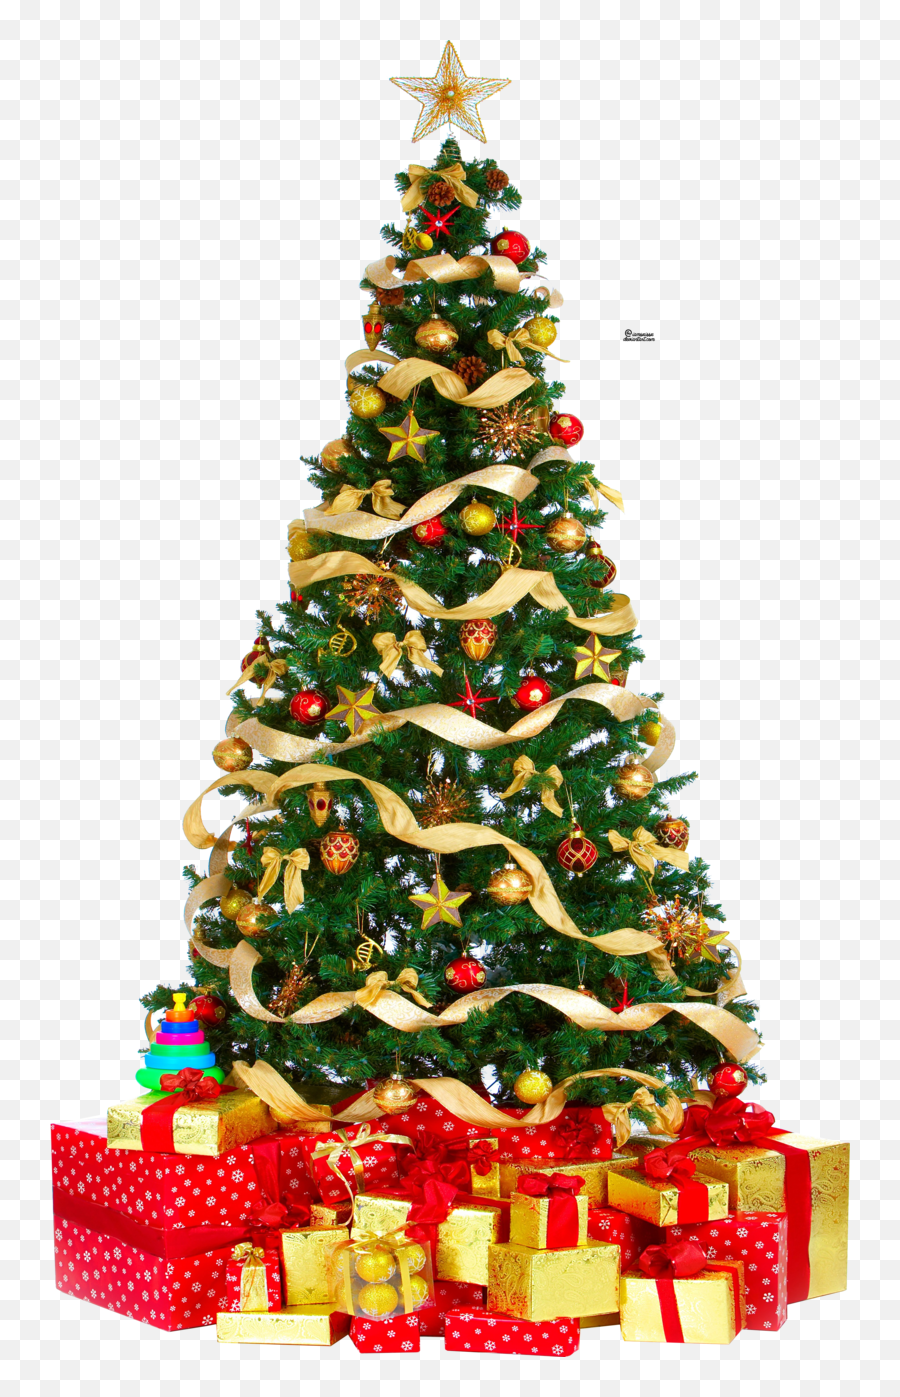 Christmas Tree Png Free Download - Christmas Tree Png Download,Free Tree Png